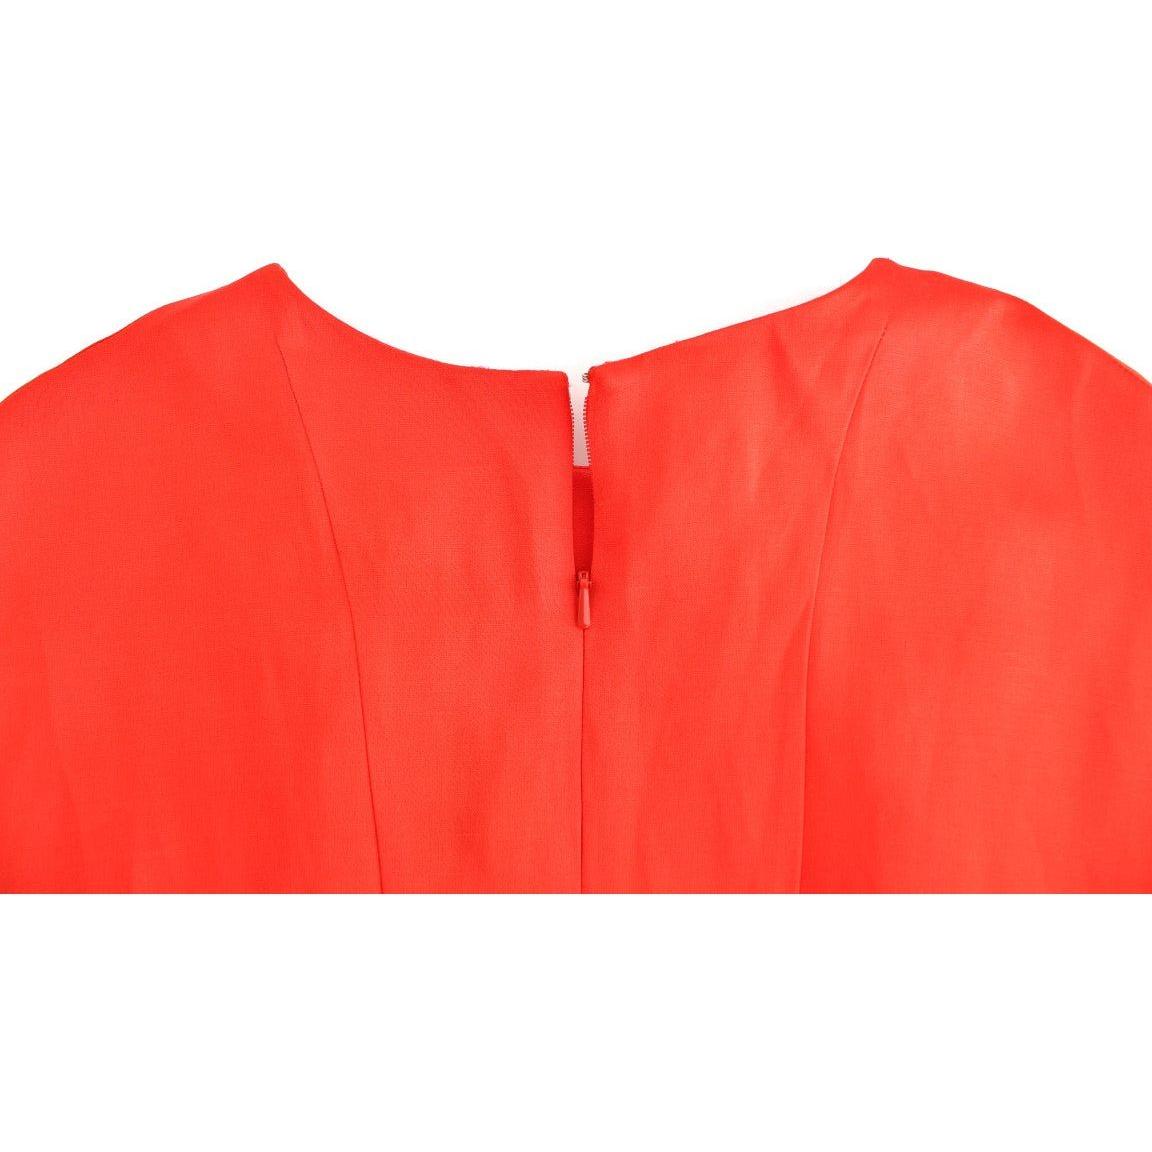 Fyodor Golan Radiant Red Linen Blend Artisan Dress red-mini-linen-3-4-sleeve-sheath-dress 185328-red-mini-linen-34-sleeve-sheath-dress-5.jpg